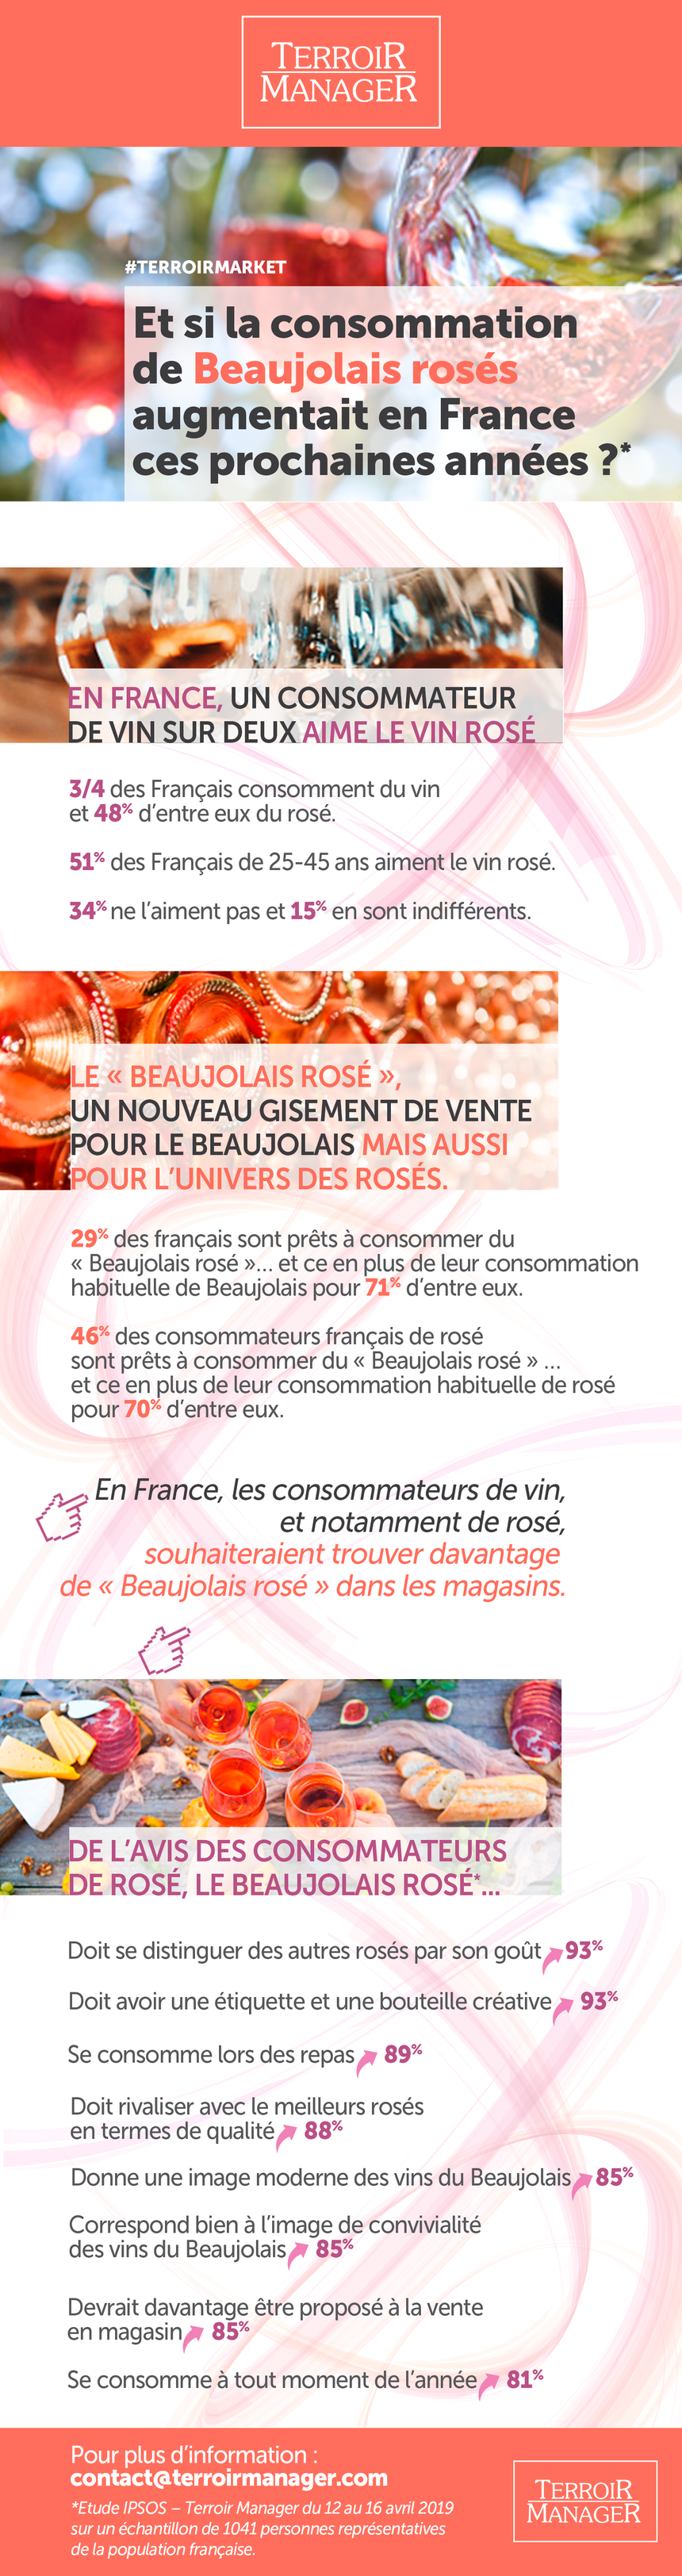 Etude IPSOS &amp; Terroir Manager sur le potentiel du Beaujolais rosé en France